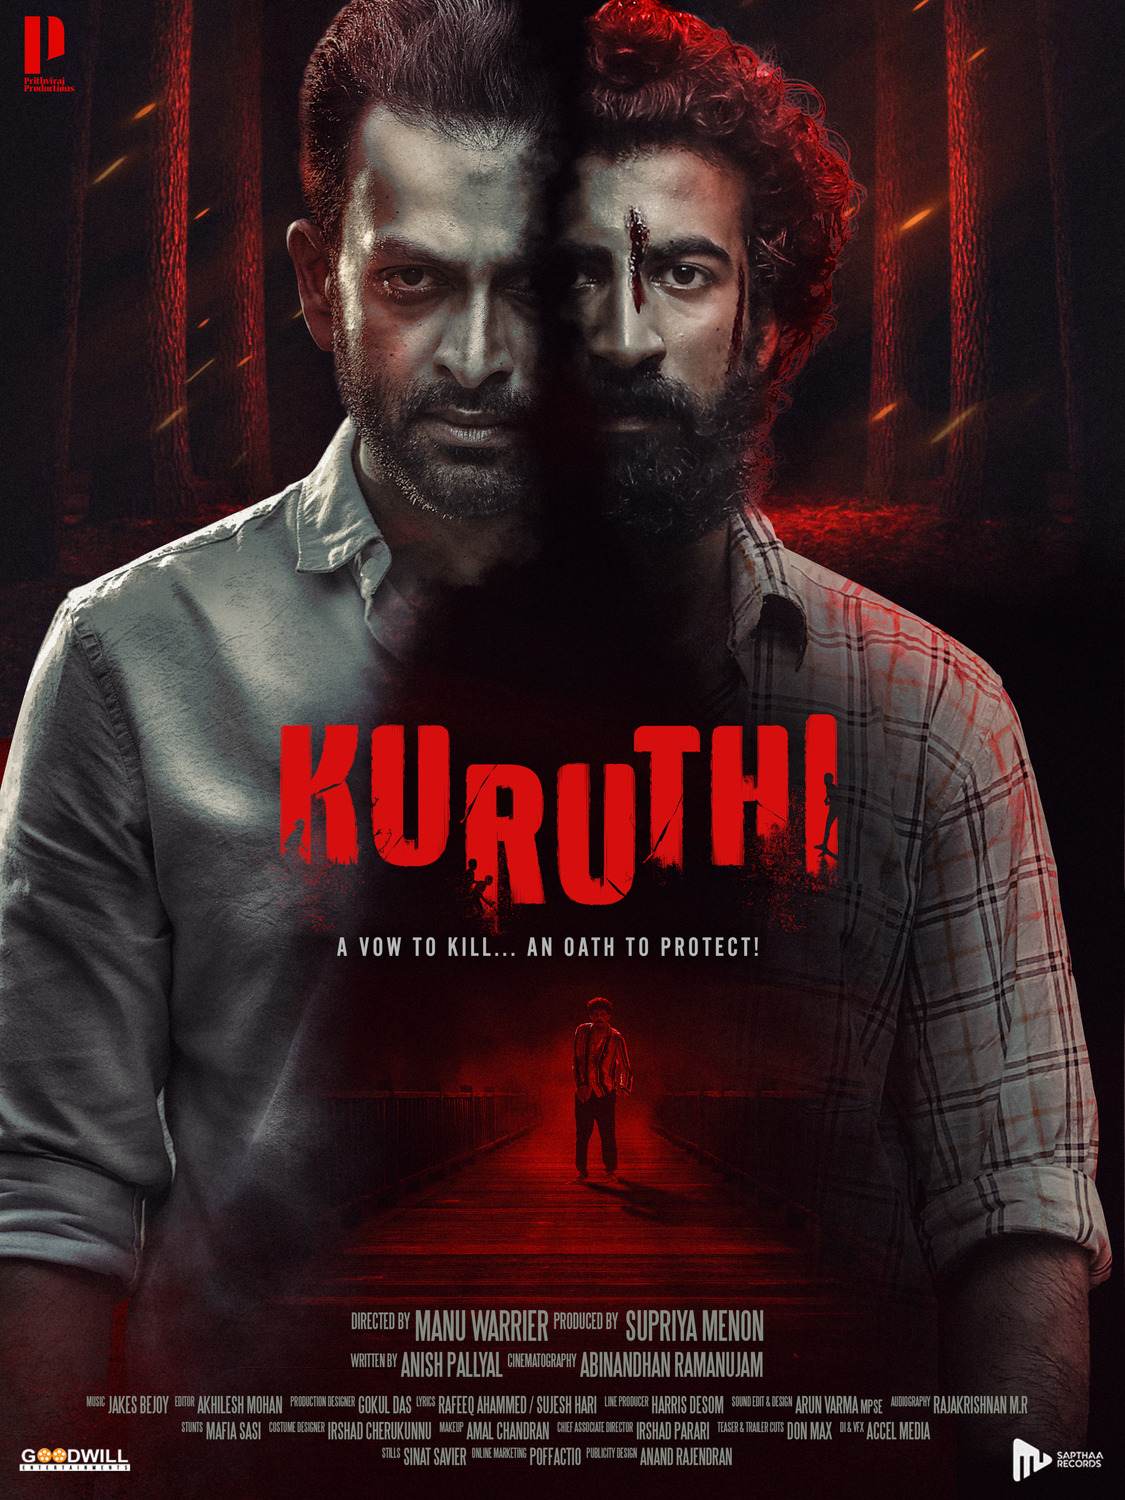 Extra Large Movie Poster Image for Kuruthi (#6 of 17)